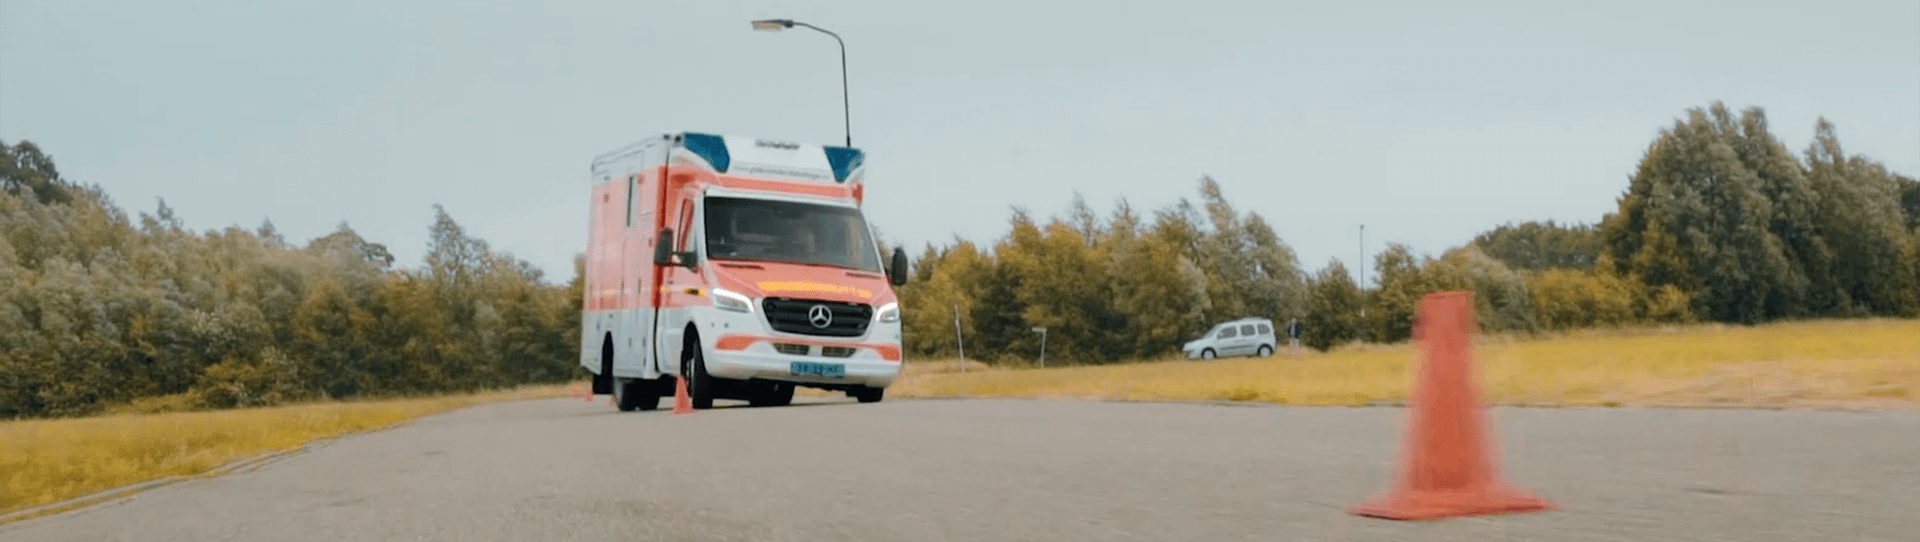 Foto: ambulanza tedesca che fa slalom coni rotondi